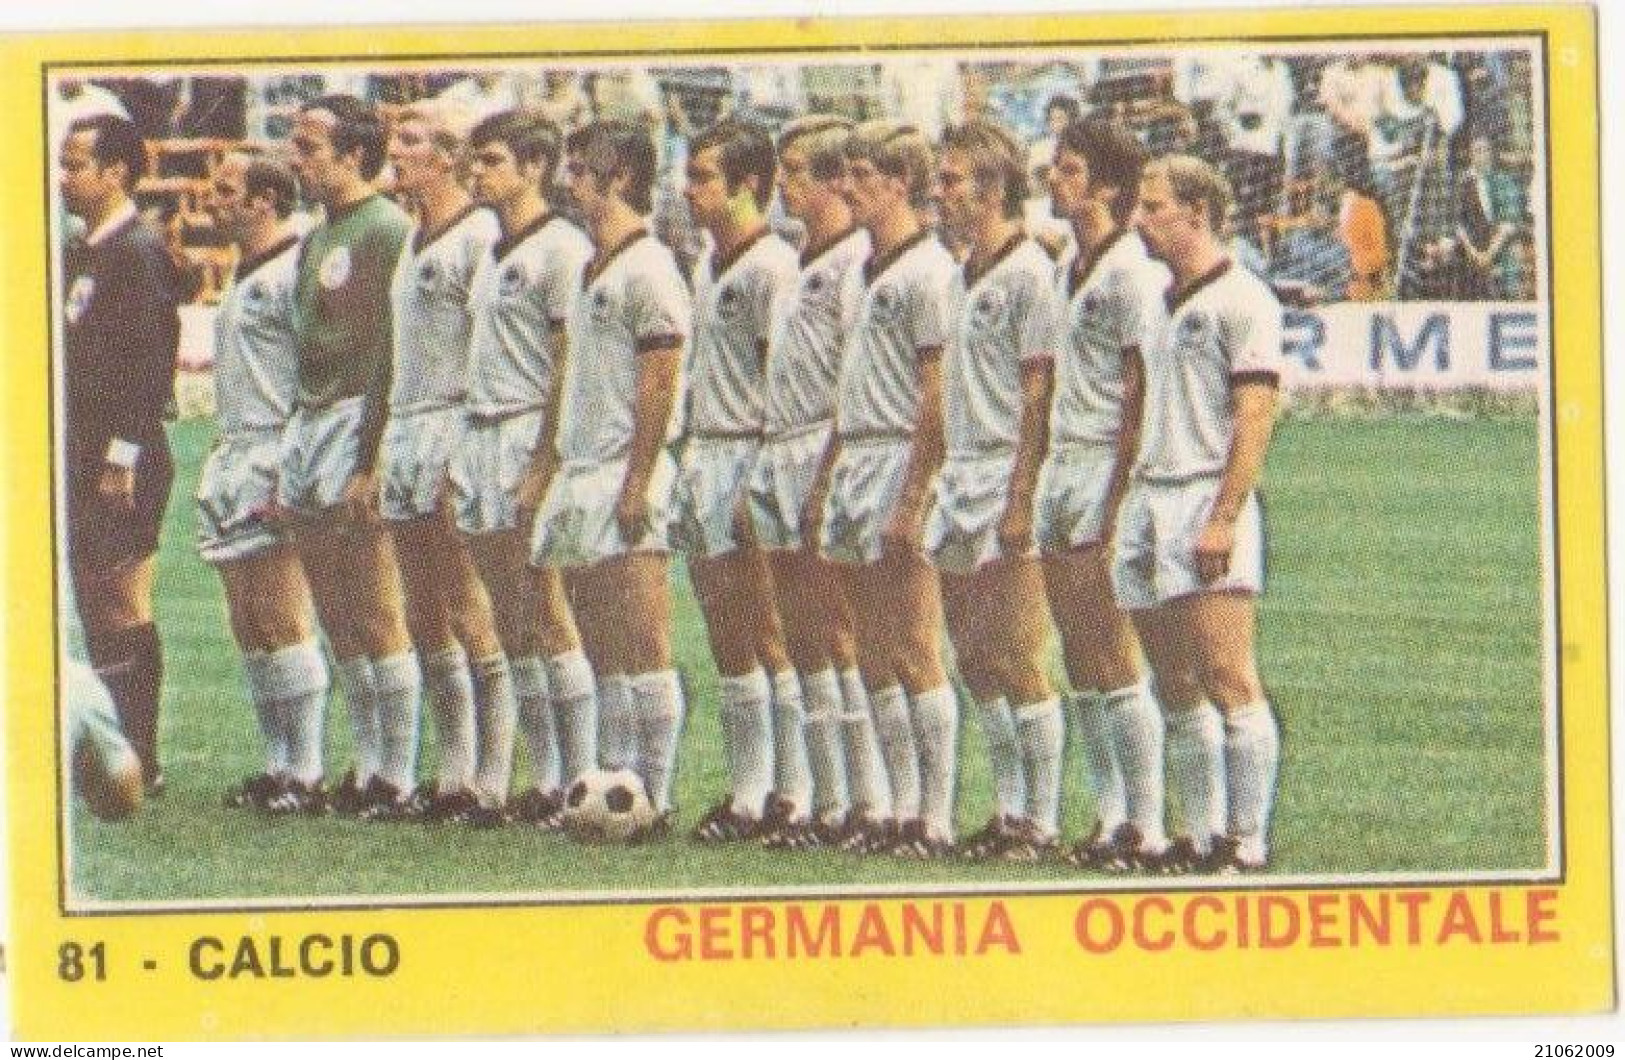 81 NAZIONALE GERMANIA OCCIDENTALE CALCIO FOOTBALL SOCCER MEXICO '70 - CAMPIONI DELLO SPORT PANINI 1970-71 - Tarjetas